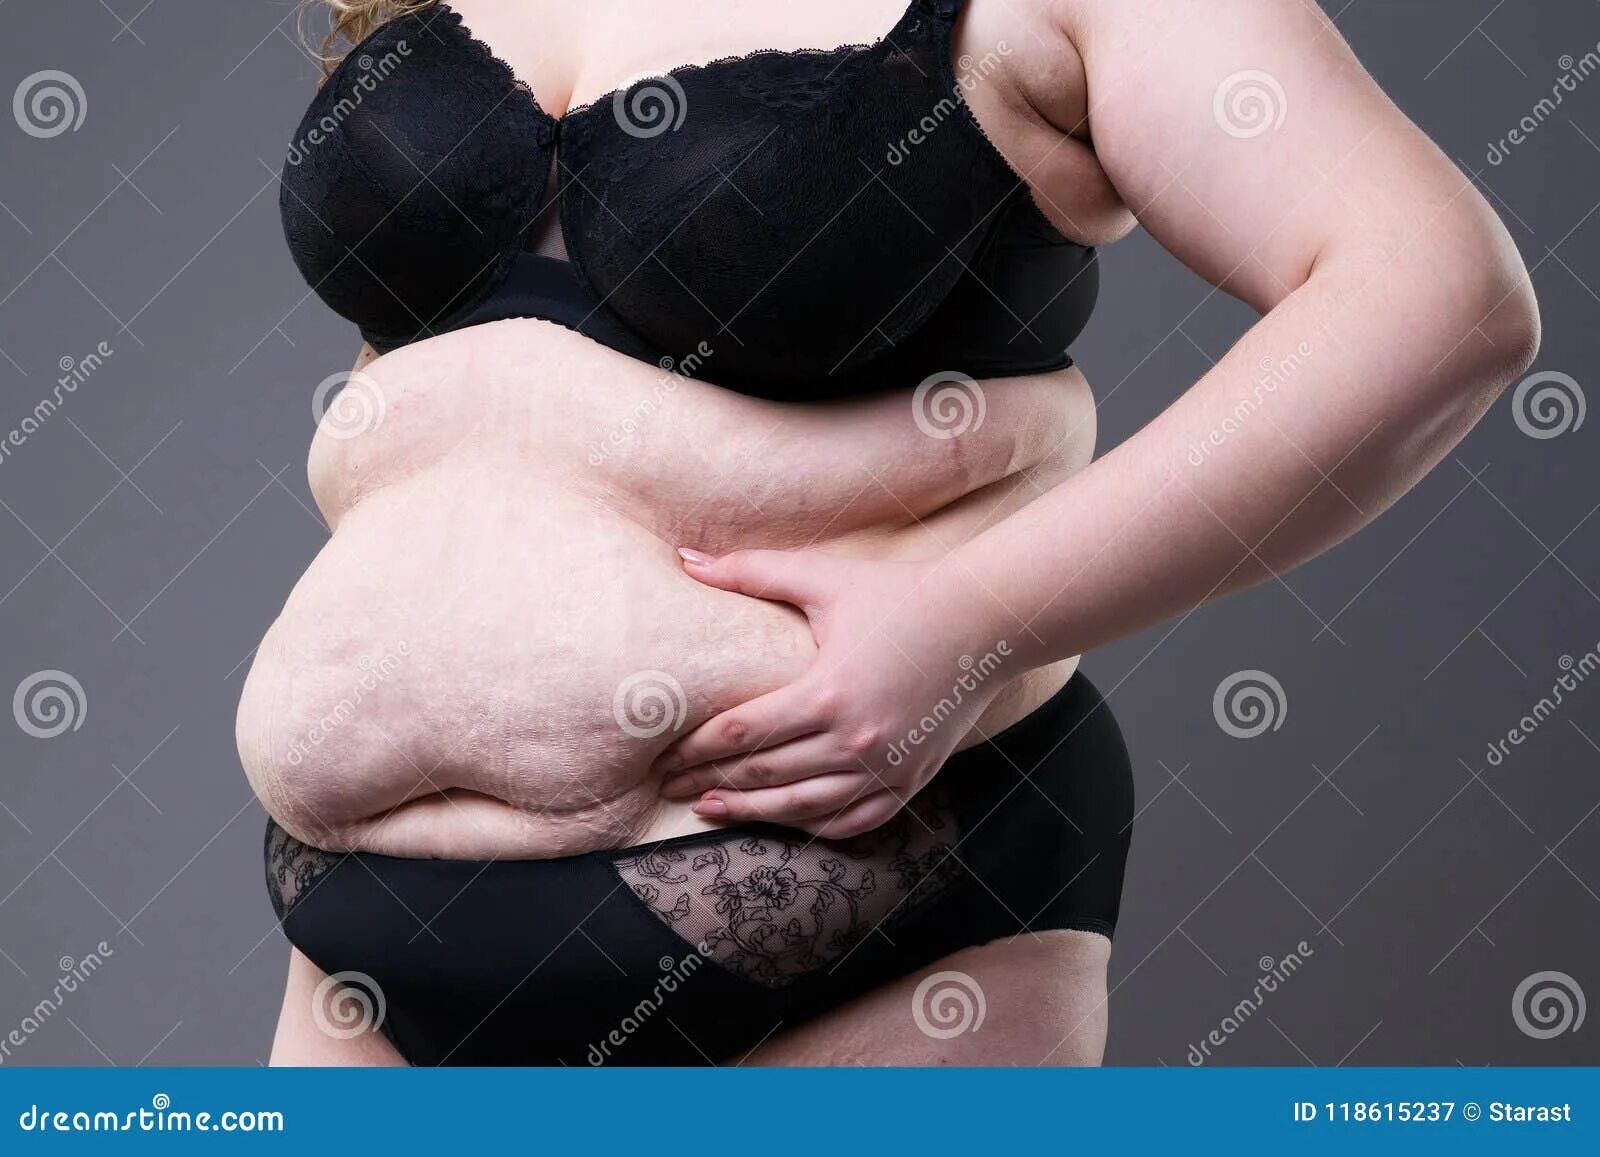 Очень жирный живот. Большой живот у женщин ожирение. Толстое пузо у женщин от еды.